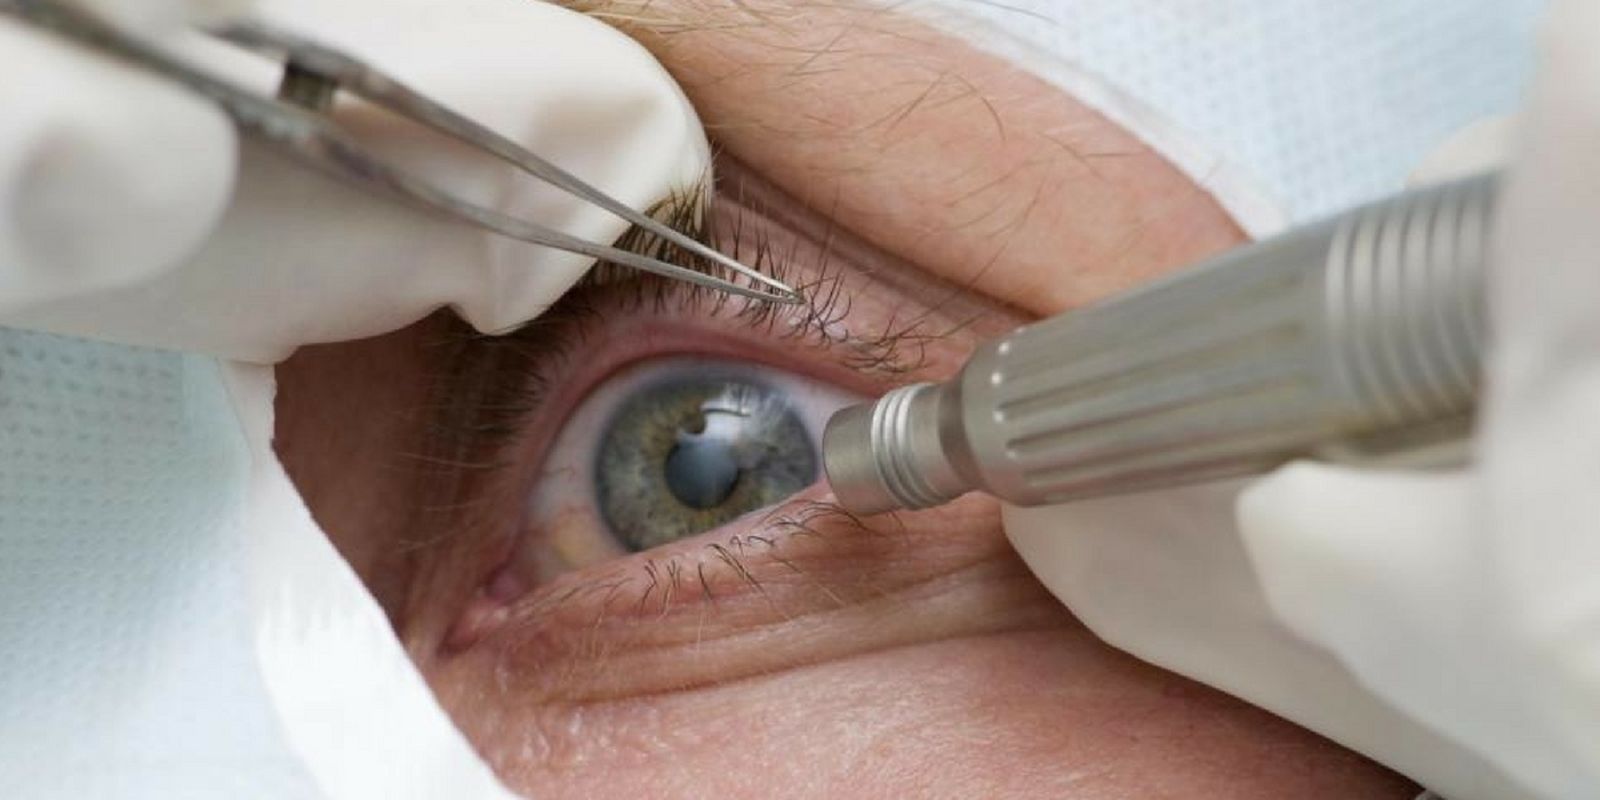 Abril Marrom alerta sobre doenças que podem levar à cegueira